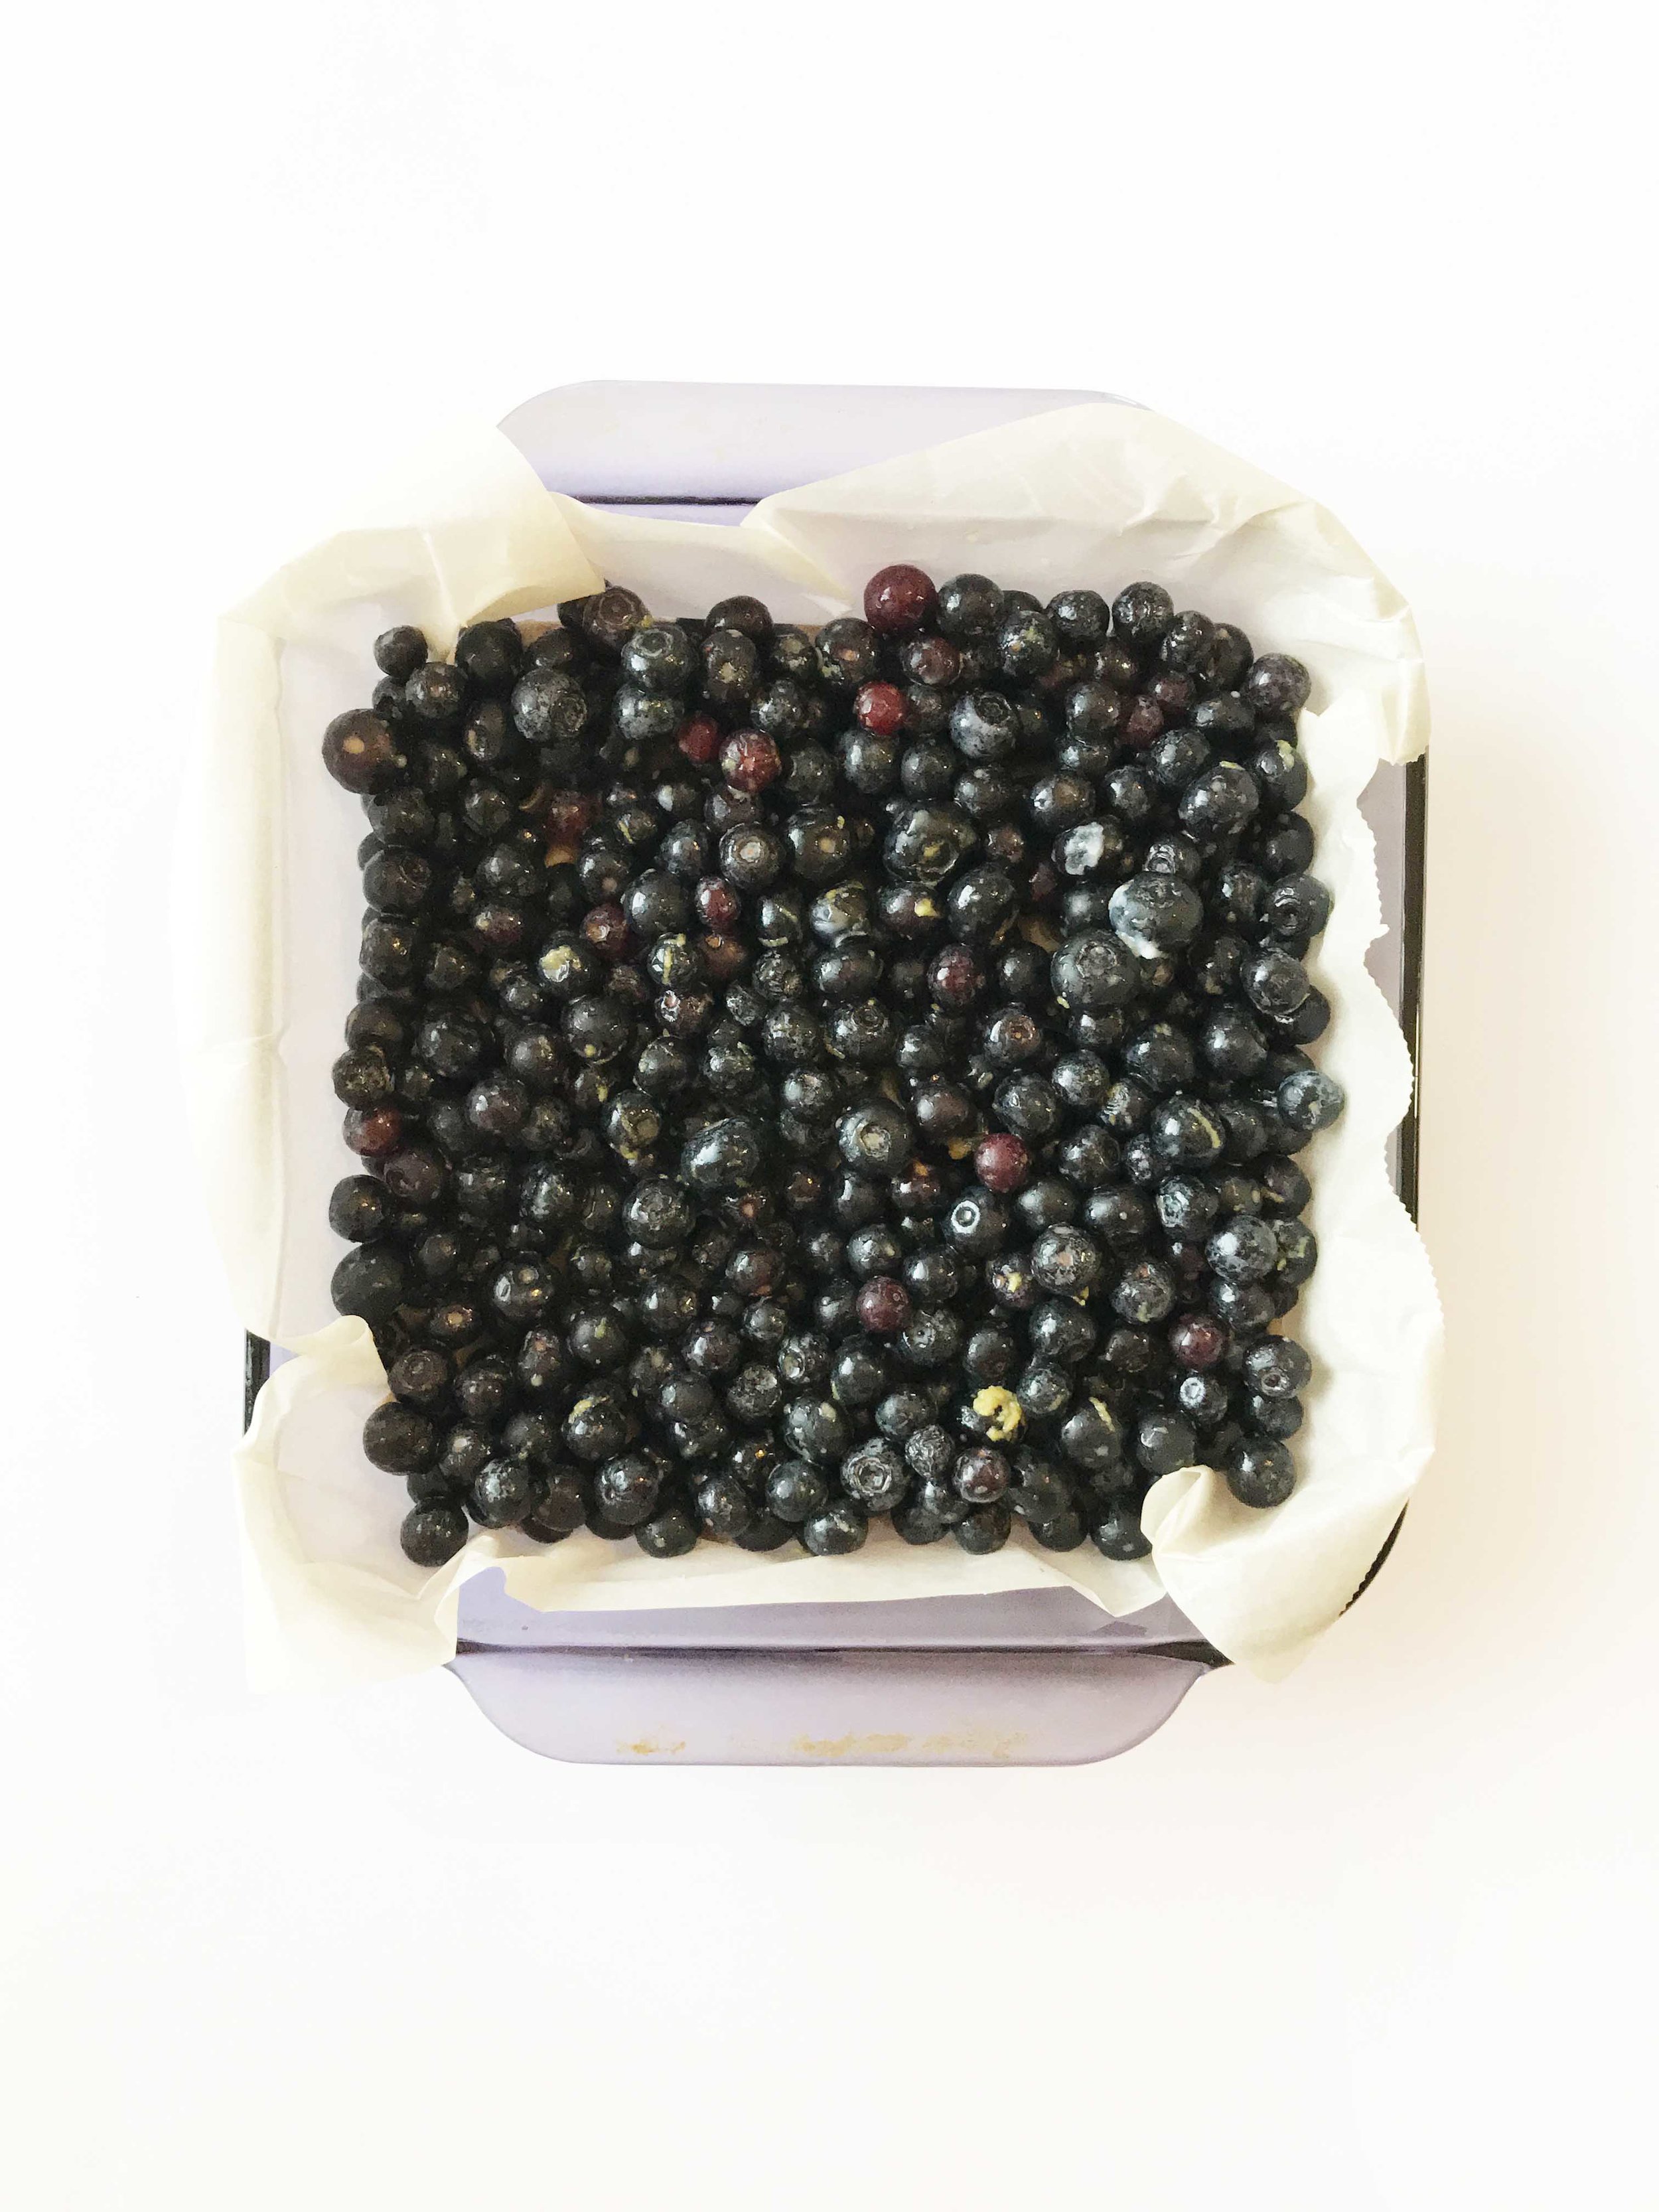 blueberry-oat-bars5.jpg